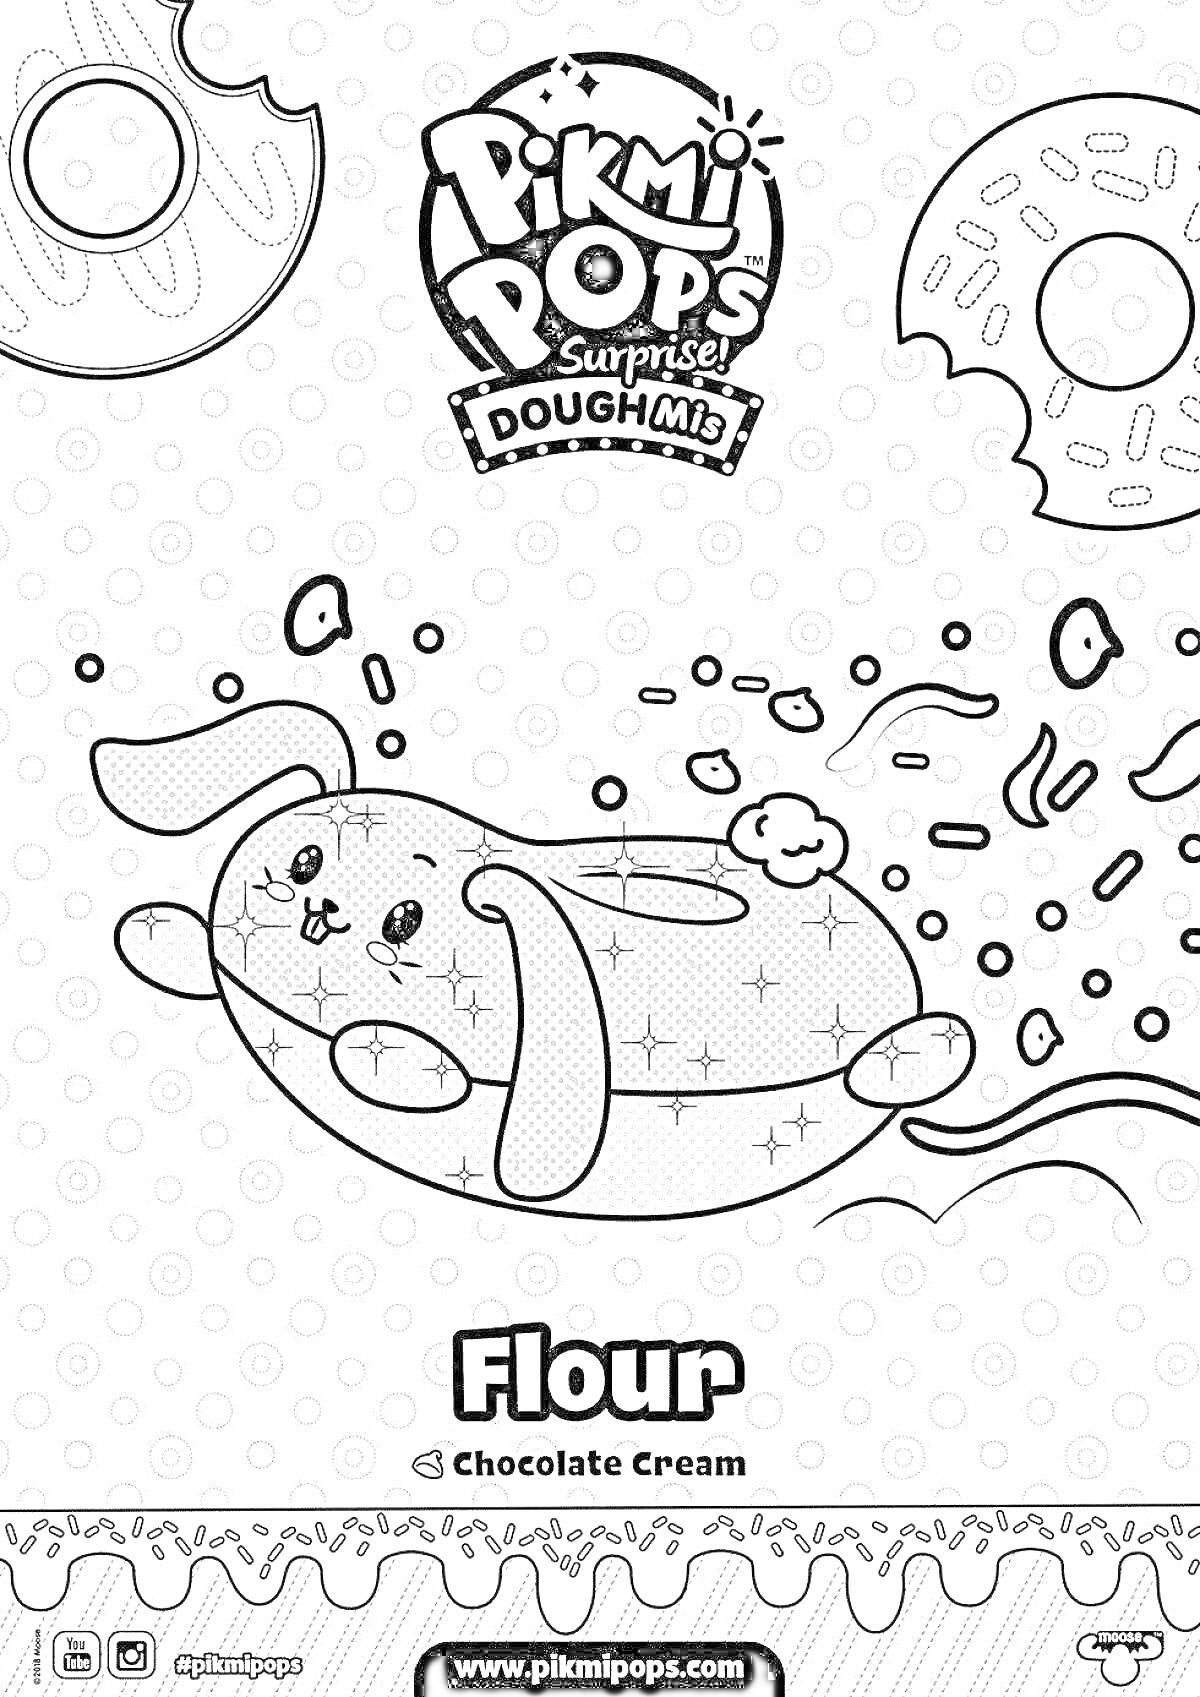 Раскраска Pikmi Pops Surprise DoughMi с игрушкой-зайчиком Flour в форме пончика с шоколадным кремом и летящими вокруг крошками